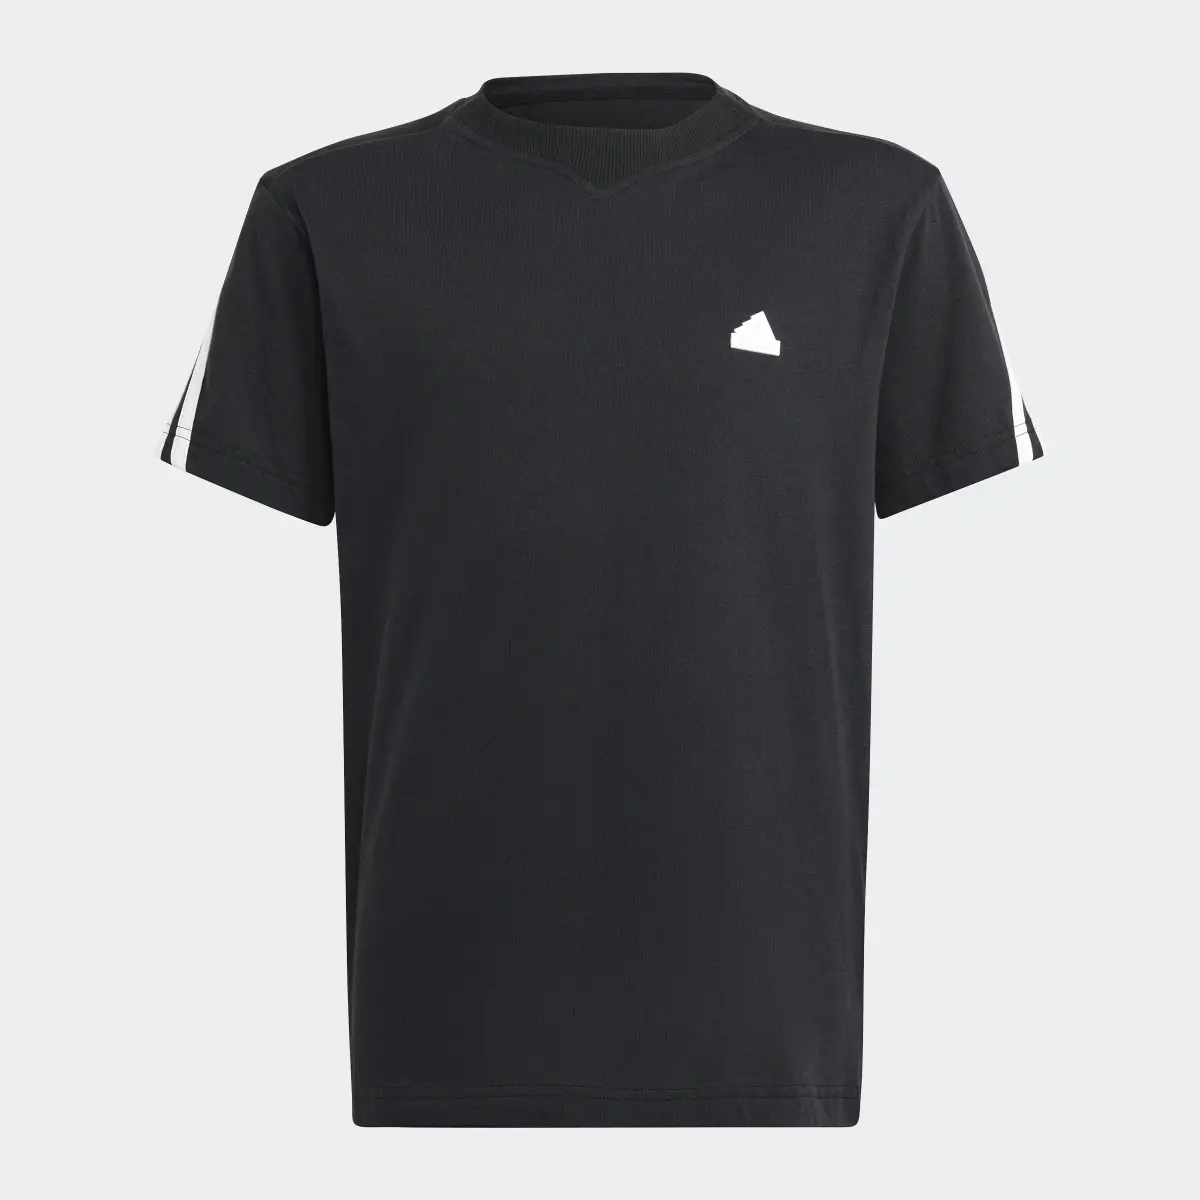 Adidas T-shirt Future Icons 3-Stripes. 3